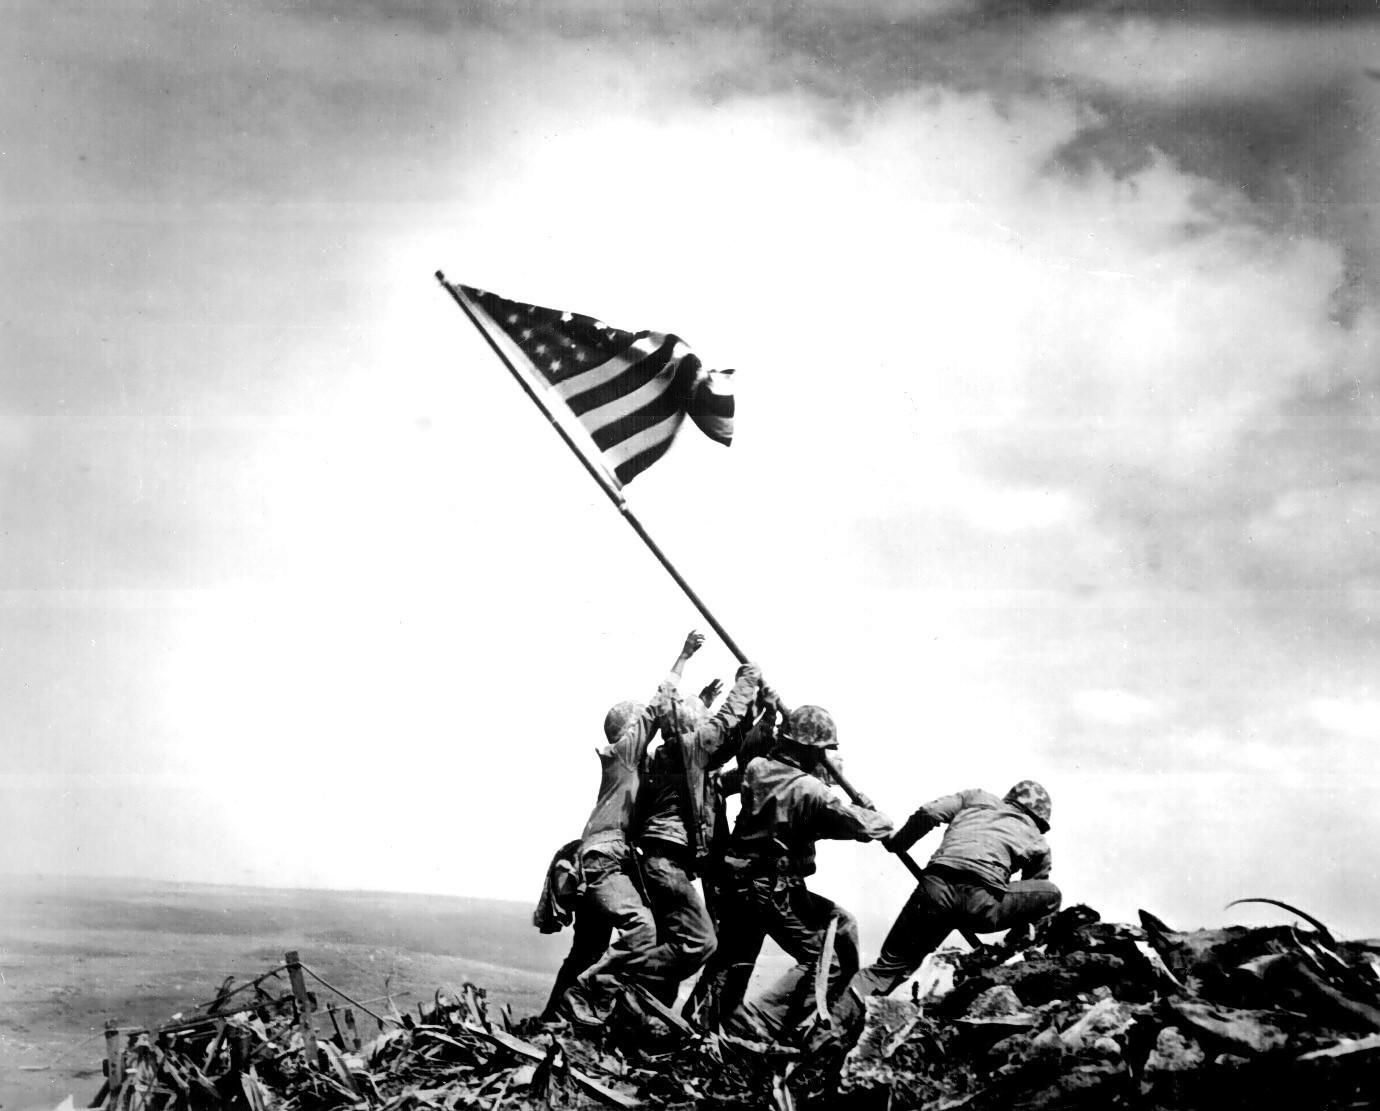 soldados andando sobre uma pilha de destroços, carregando uma haste com a bandeira americana